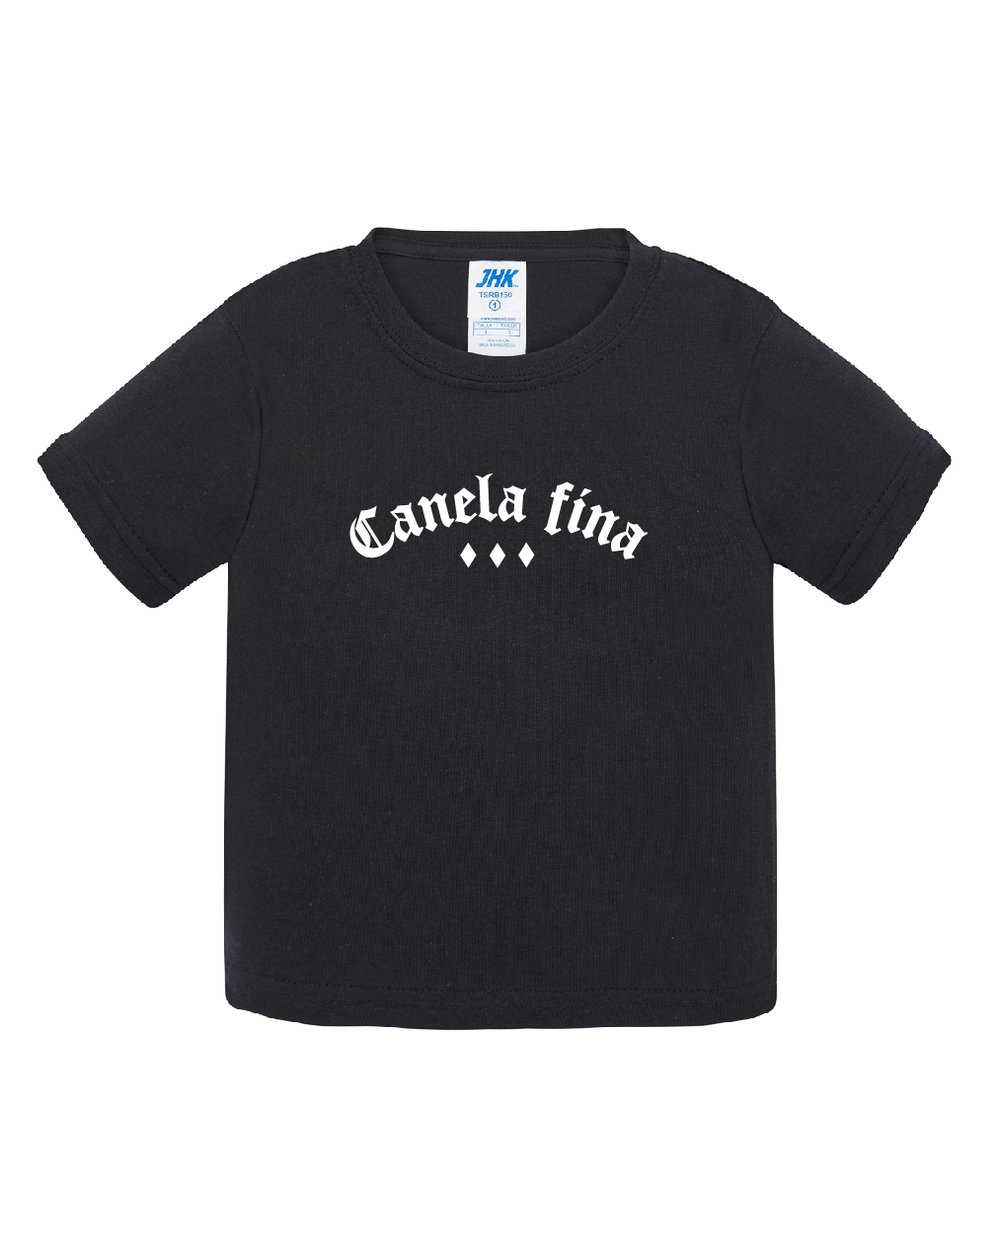 Camiseta  PEQUES Canelita Fina